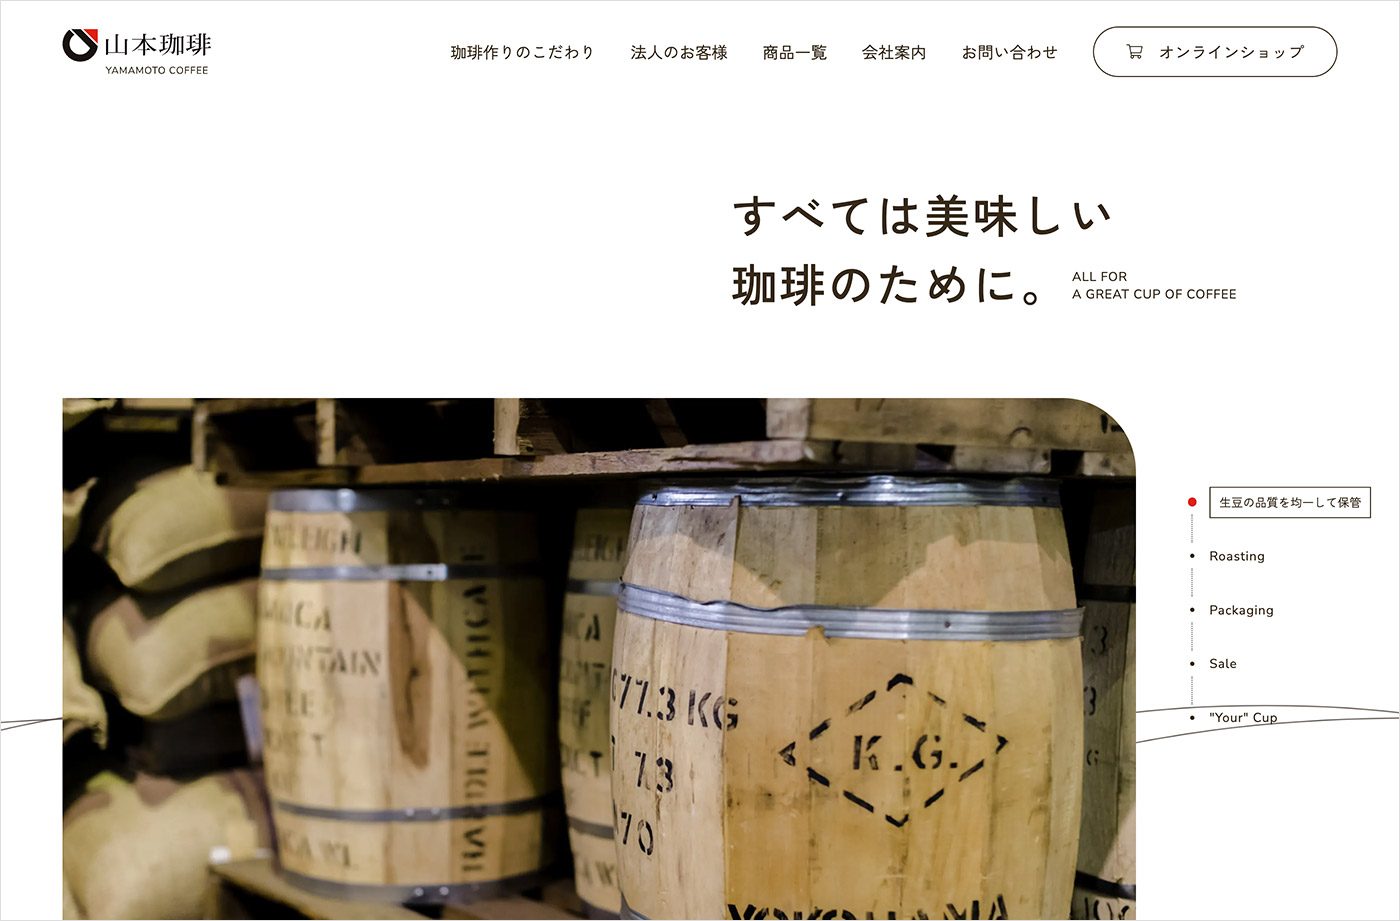 山本珈琲株式会社ウェブサイトの画面キャプチャ画像